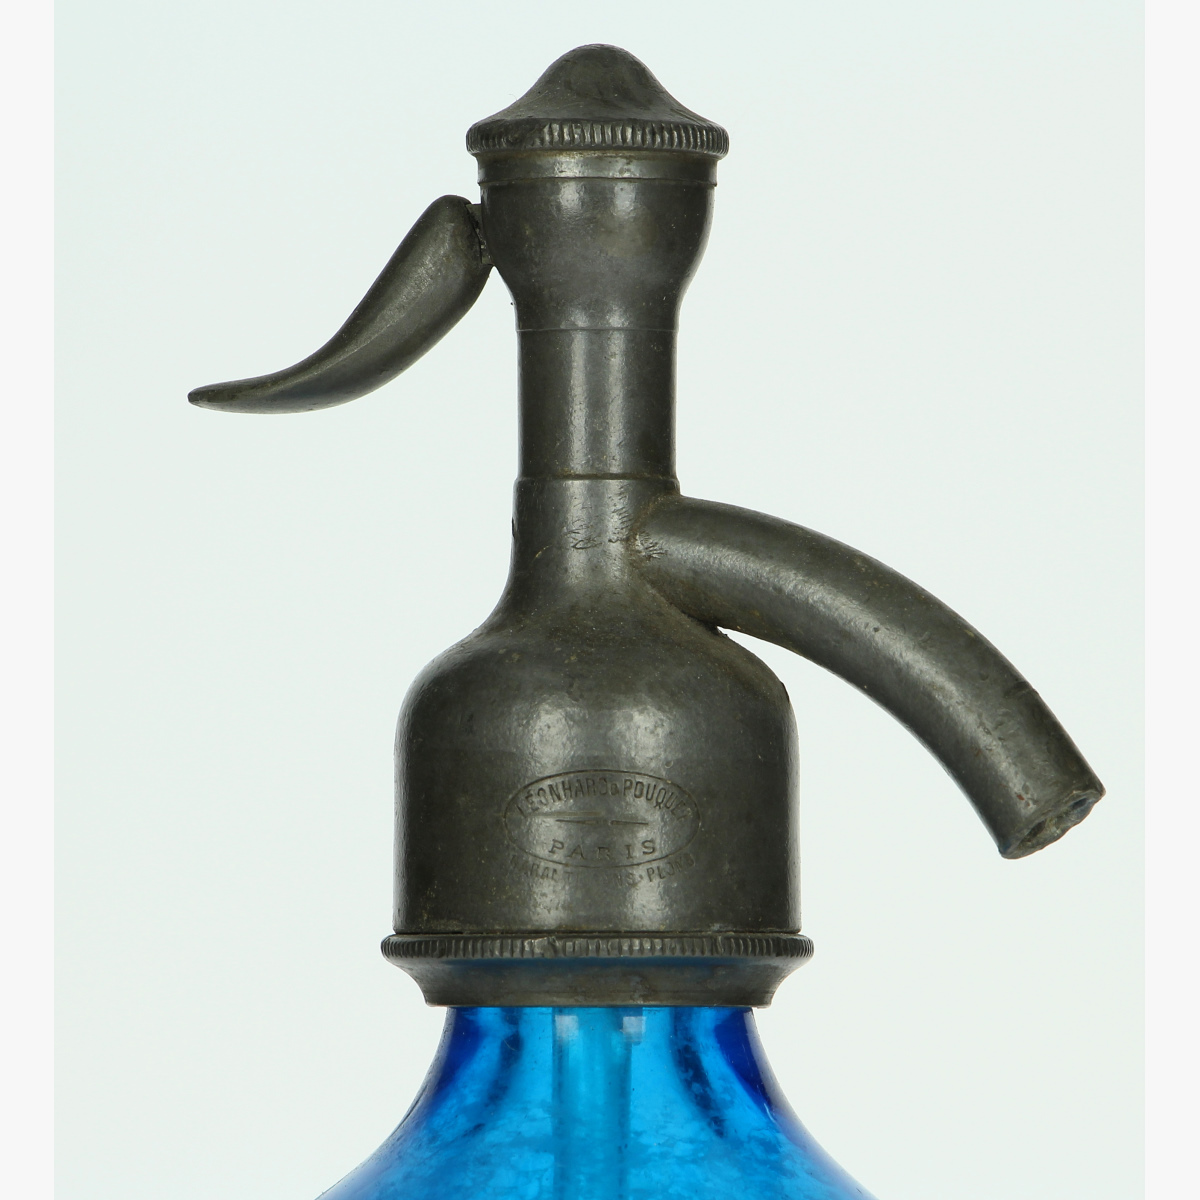 Afbeeldingen van oude soda fles blauw 